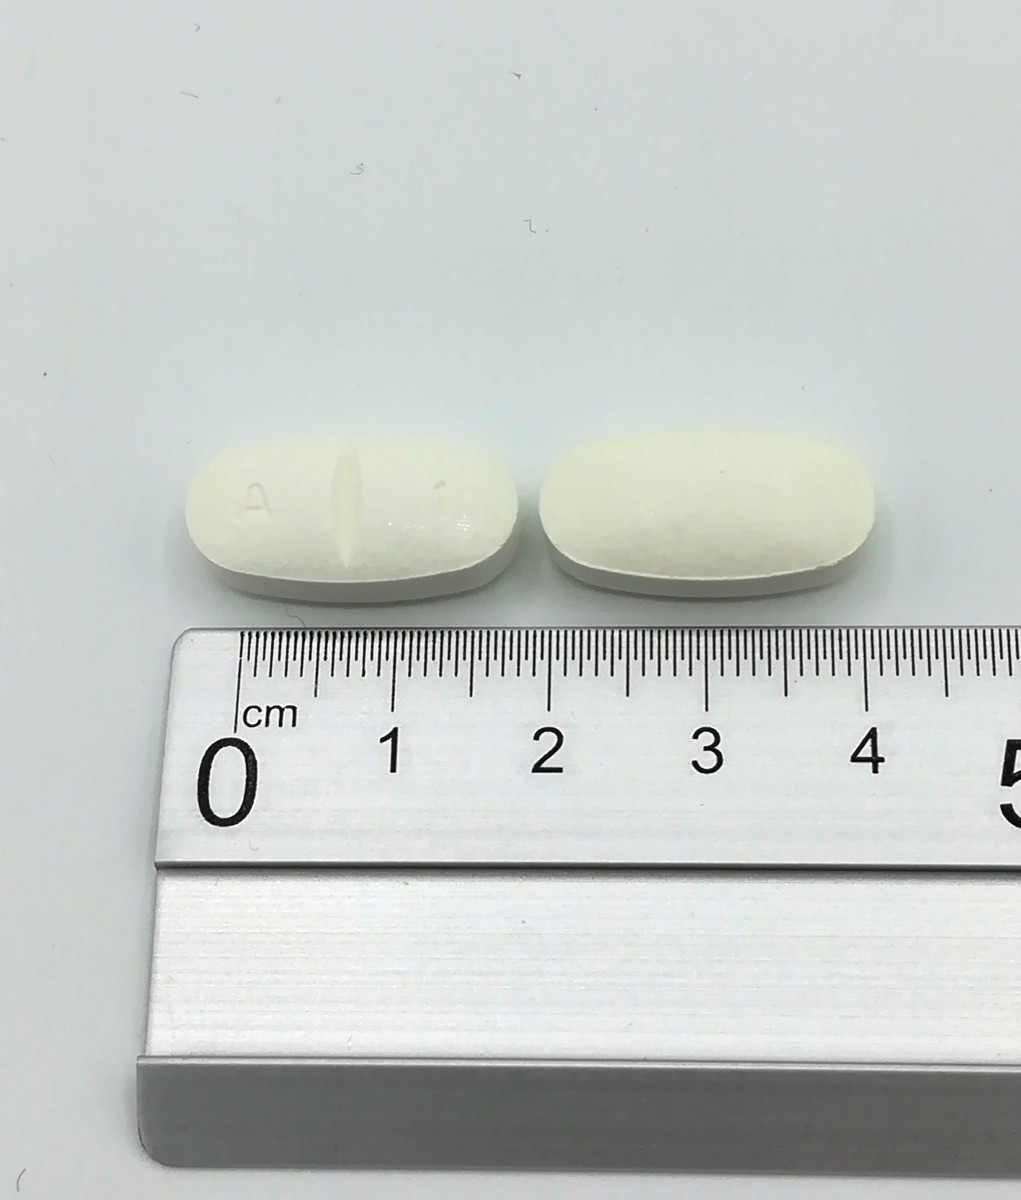 AMOXICILINA NORMON 1000 MG COMPRIMIDOS EFG  , 500 comprimidos fotografía de la forma farmacéutica.